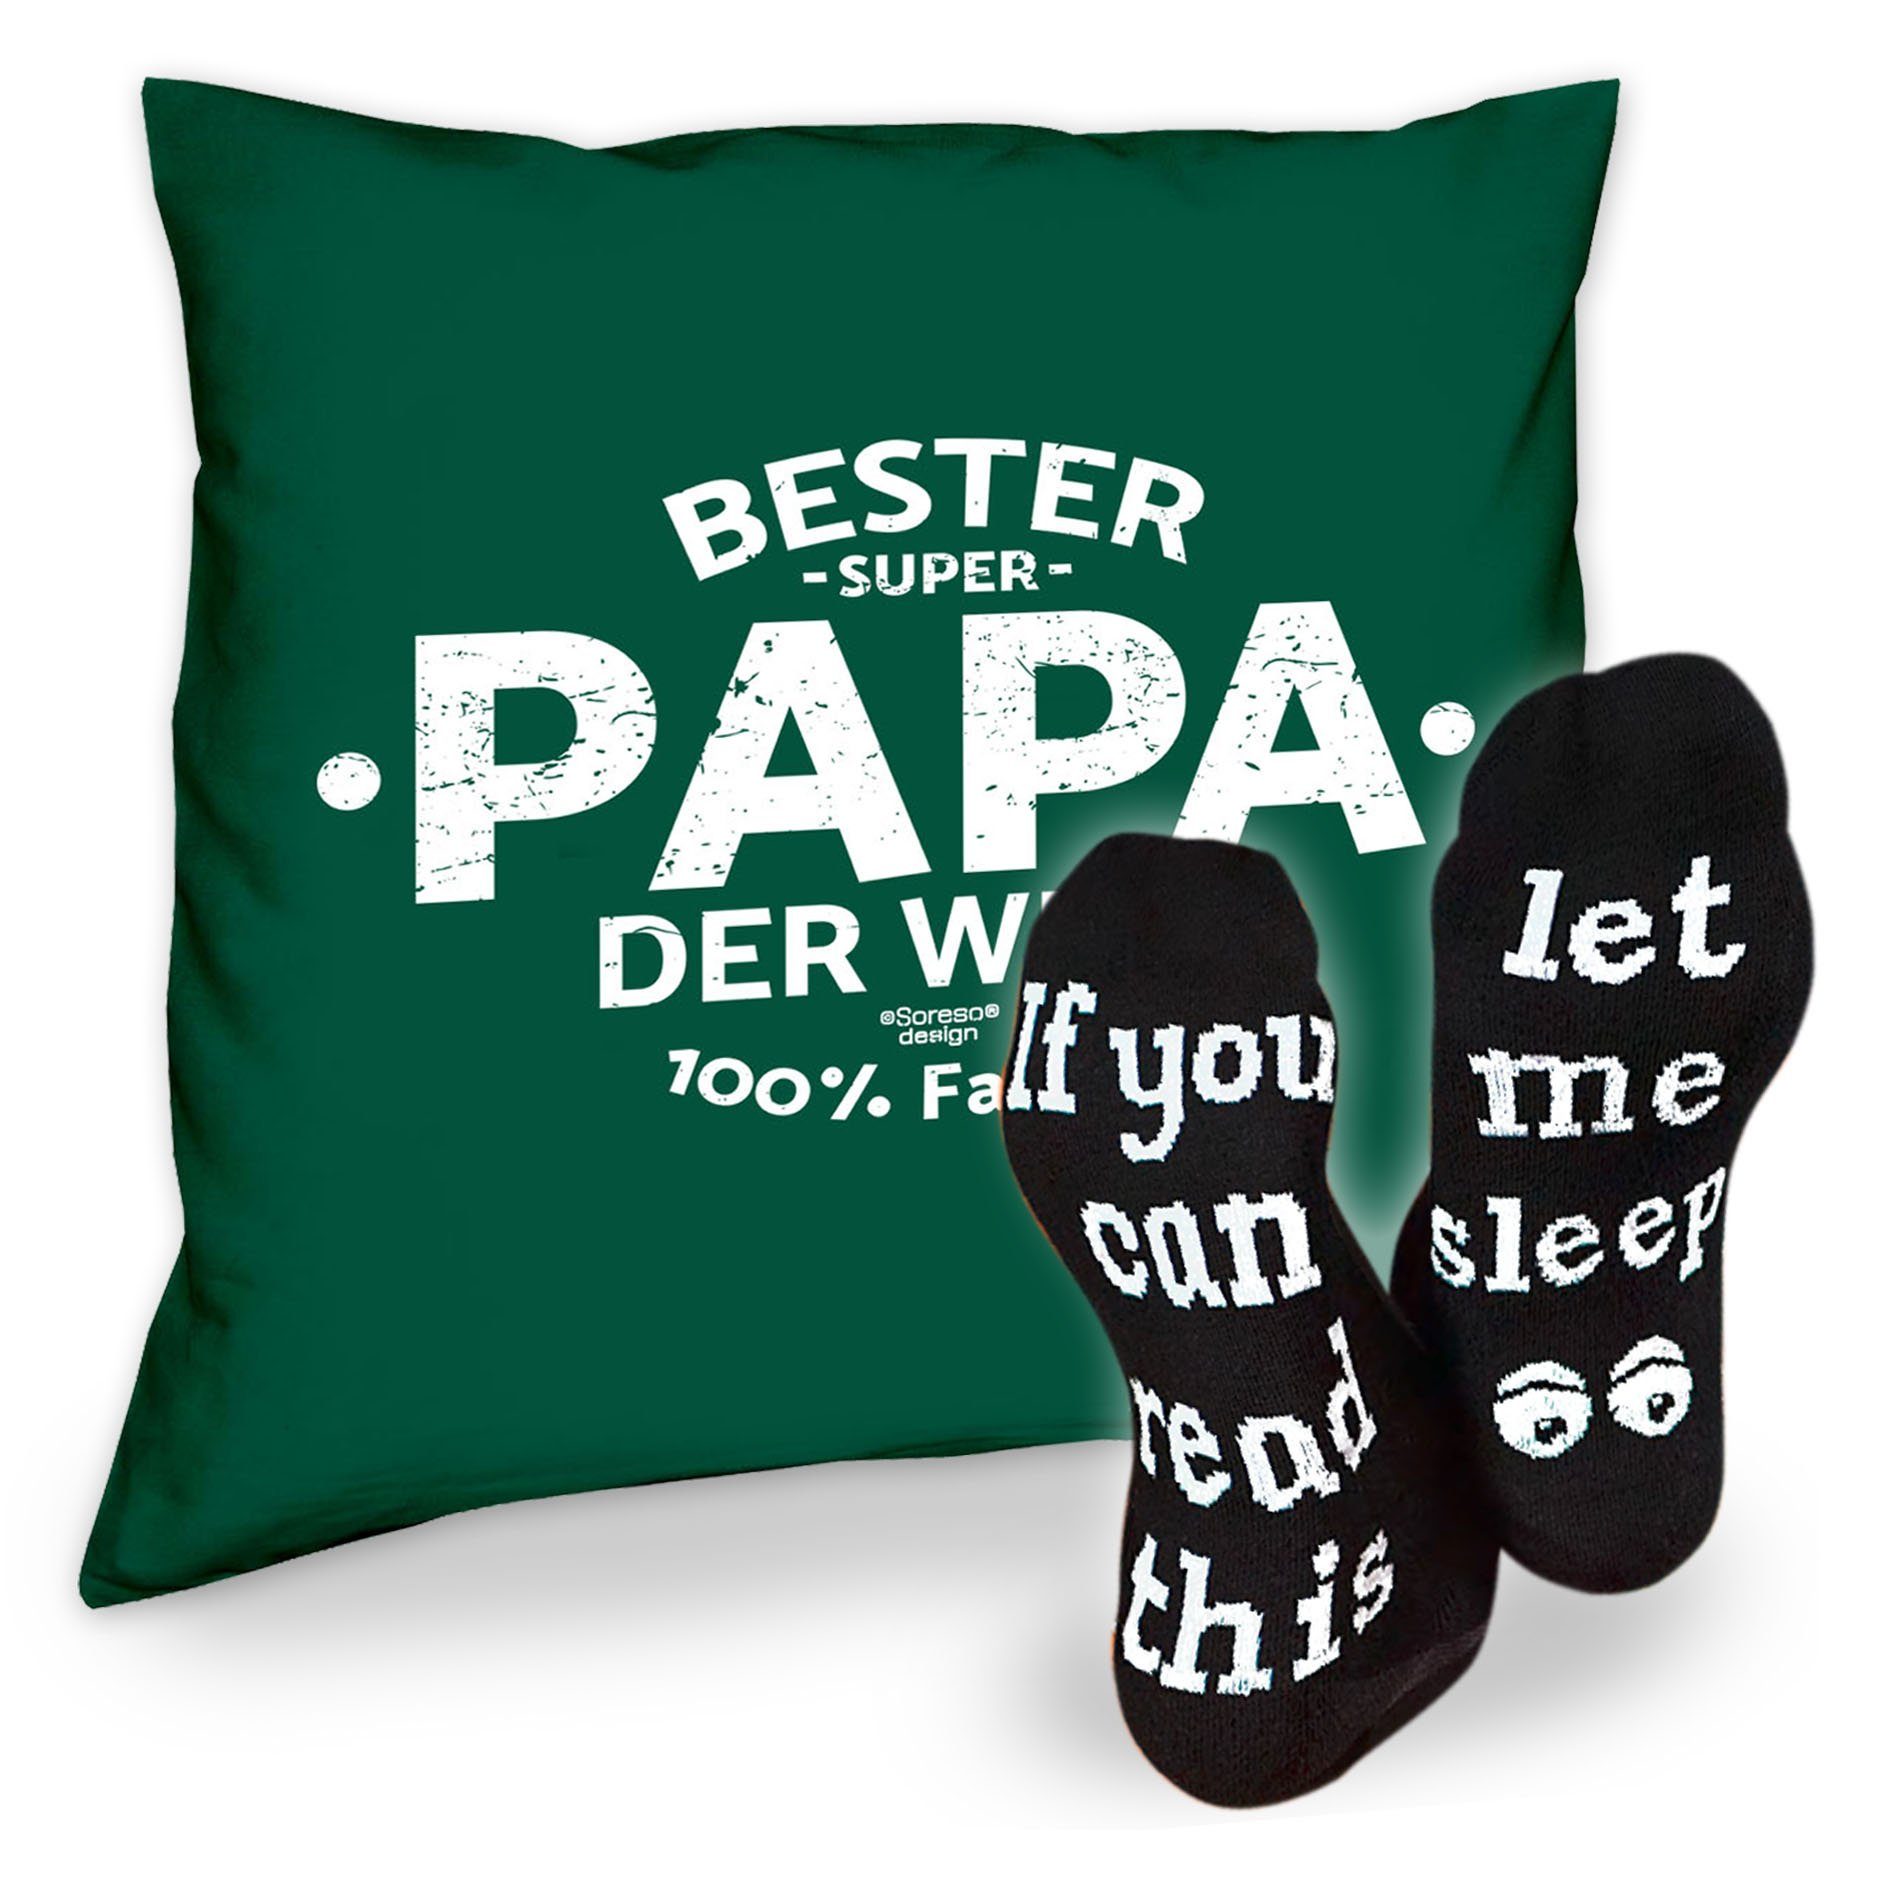 Soreso® Dekokissen Kissen Vatertag Bester Papa Sprüche Weihnachten Sleep, Welt & der Geschenk dunkelgrün Socken Geburstag